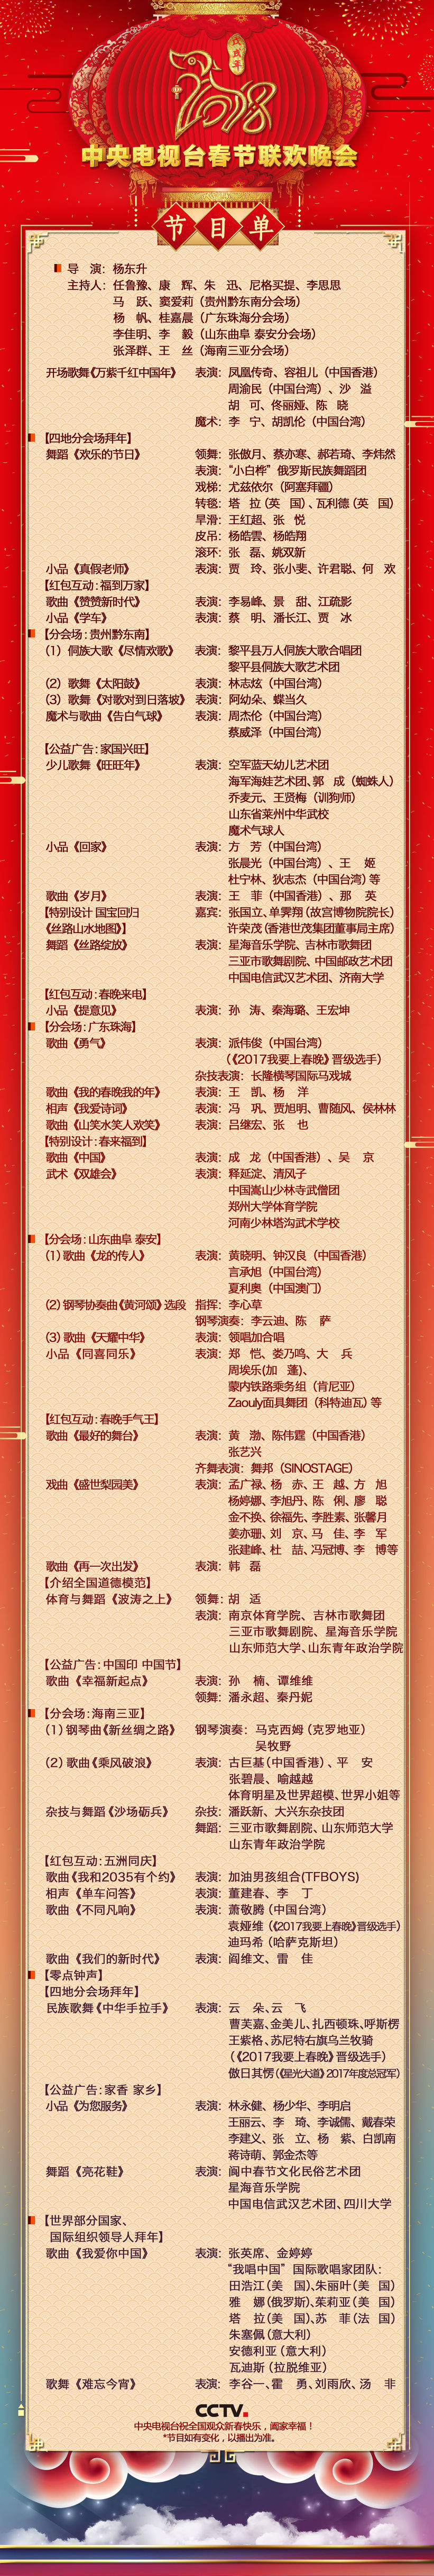 中央电视台今日节目表(2018中央电视台春节联欢晚会节目单)